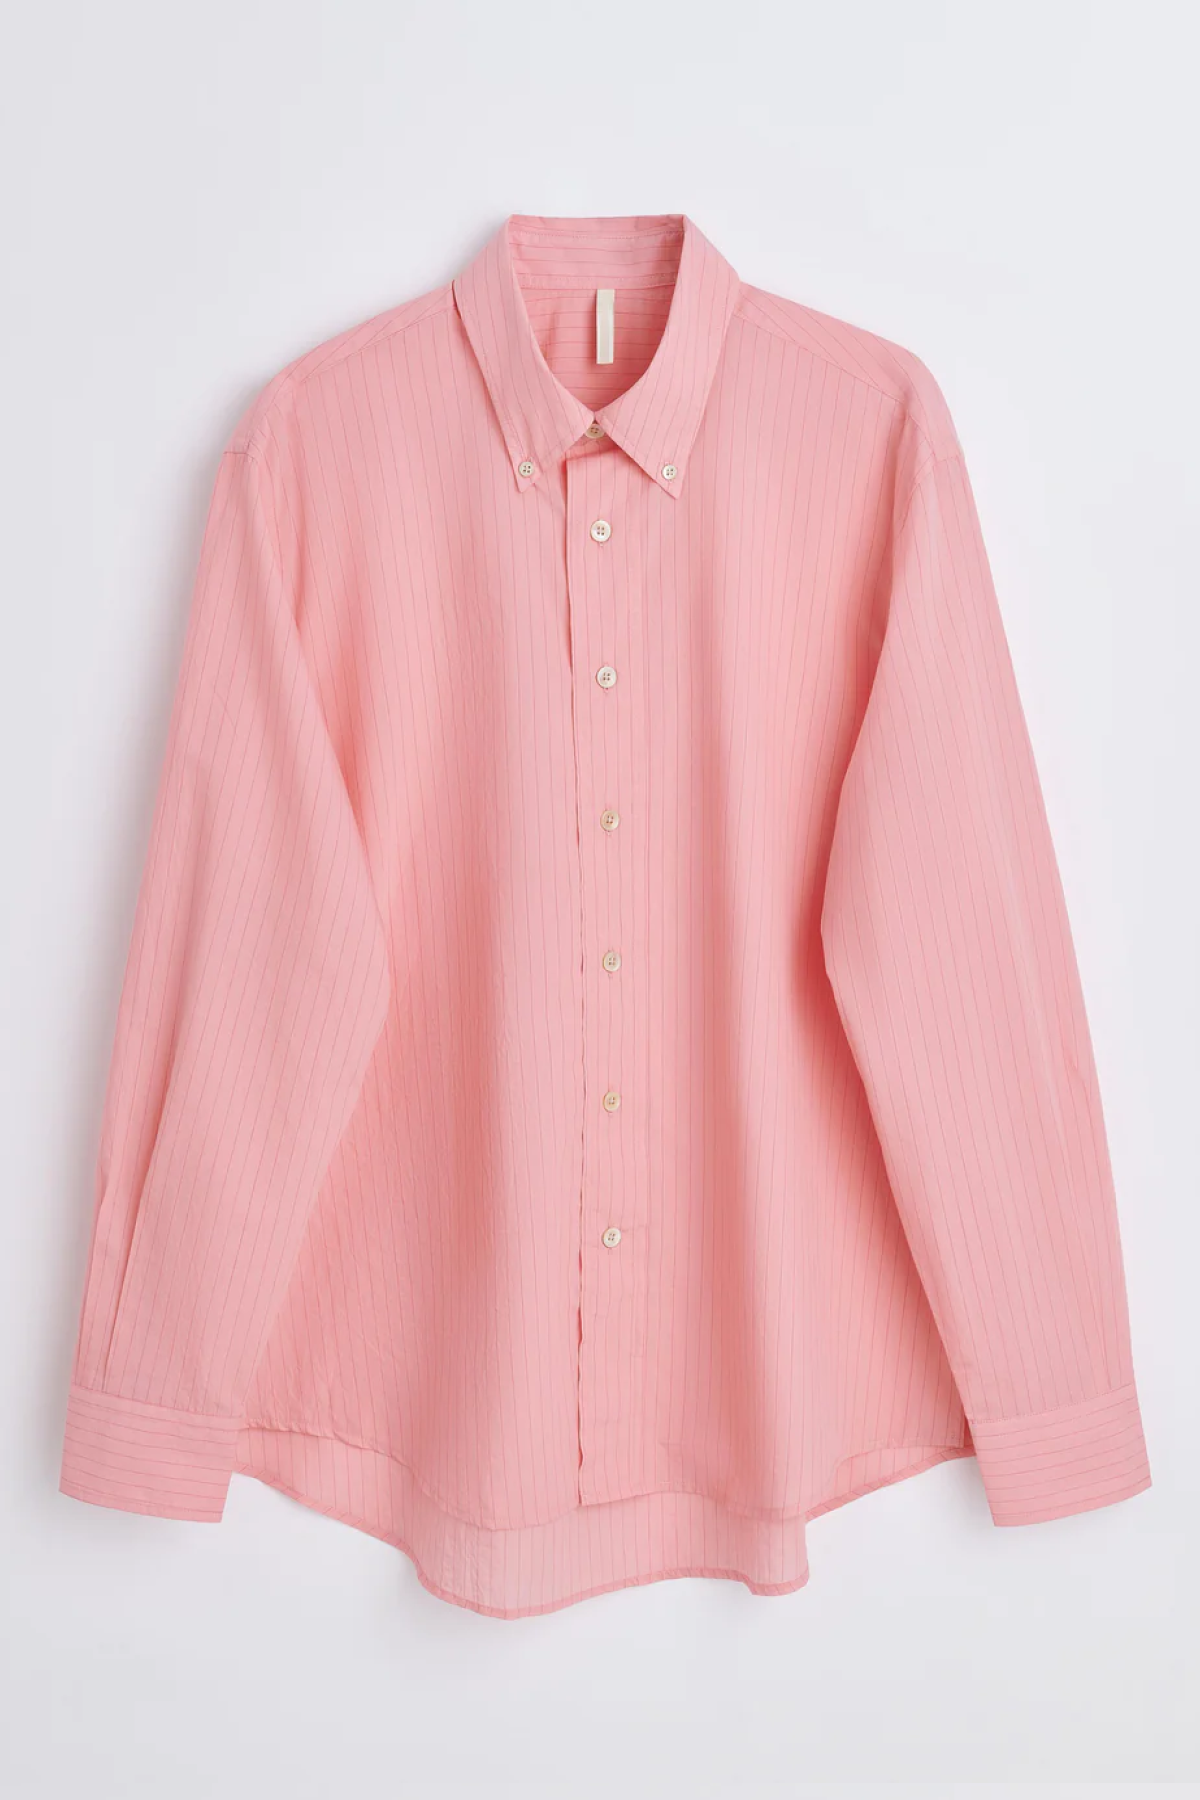 Sunflower Button Down Shirt - Pink